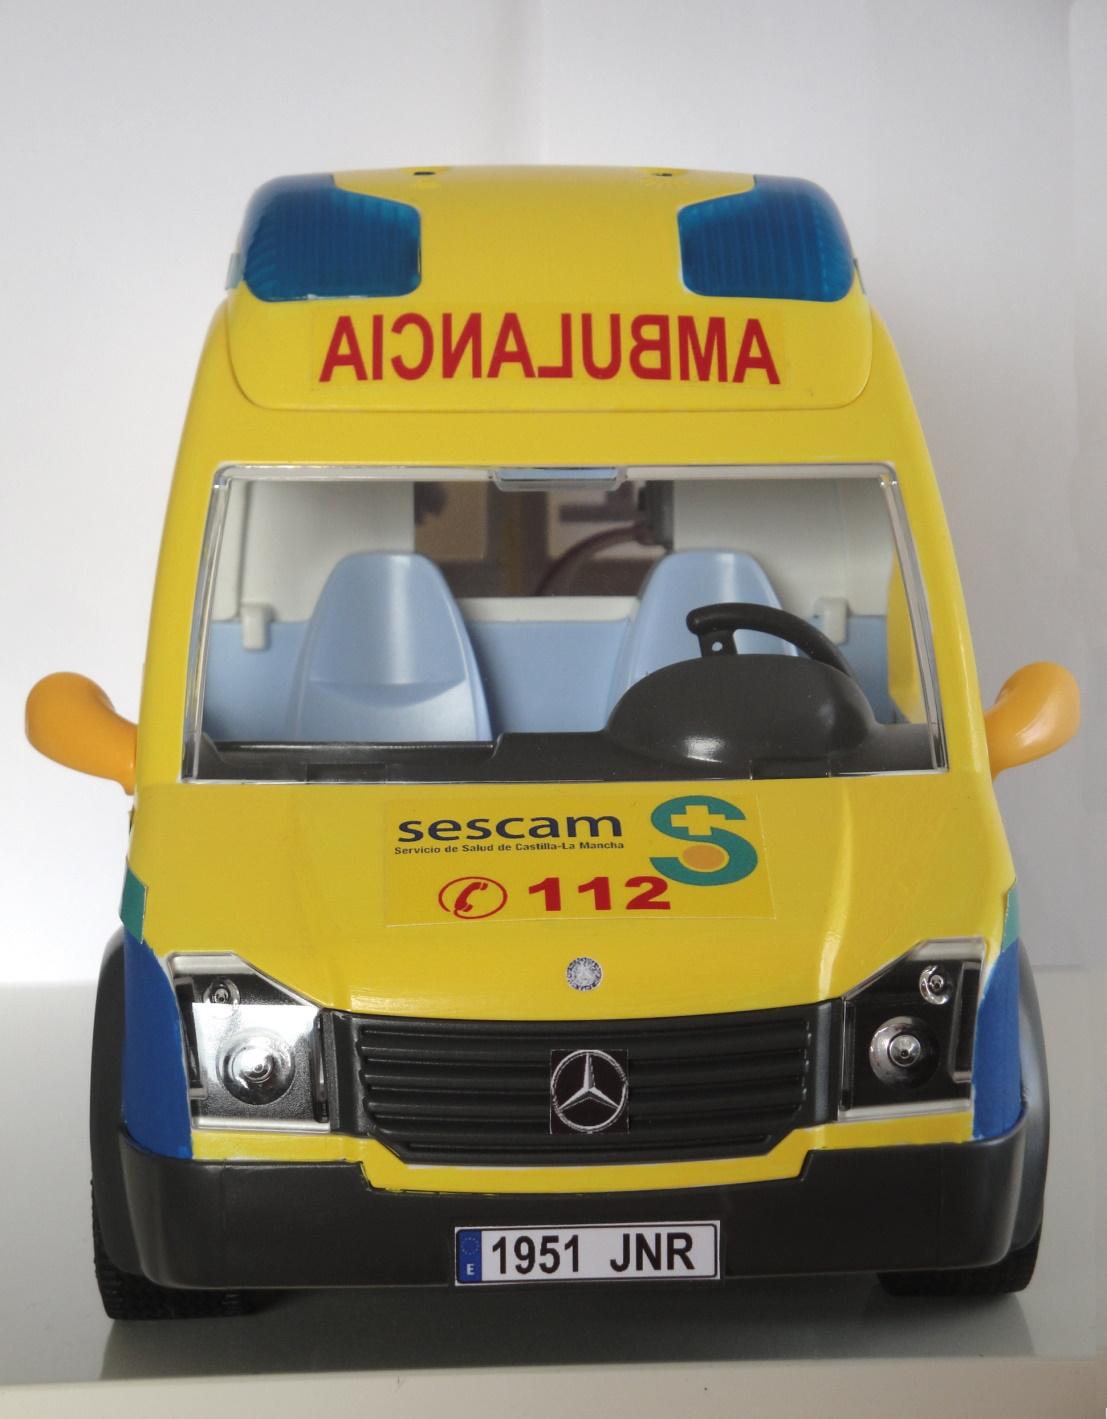 Ambulancia Playmobil personalizada con los distintivos del SESCAM Servicio de Salud de Castilla la Mancha